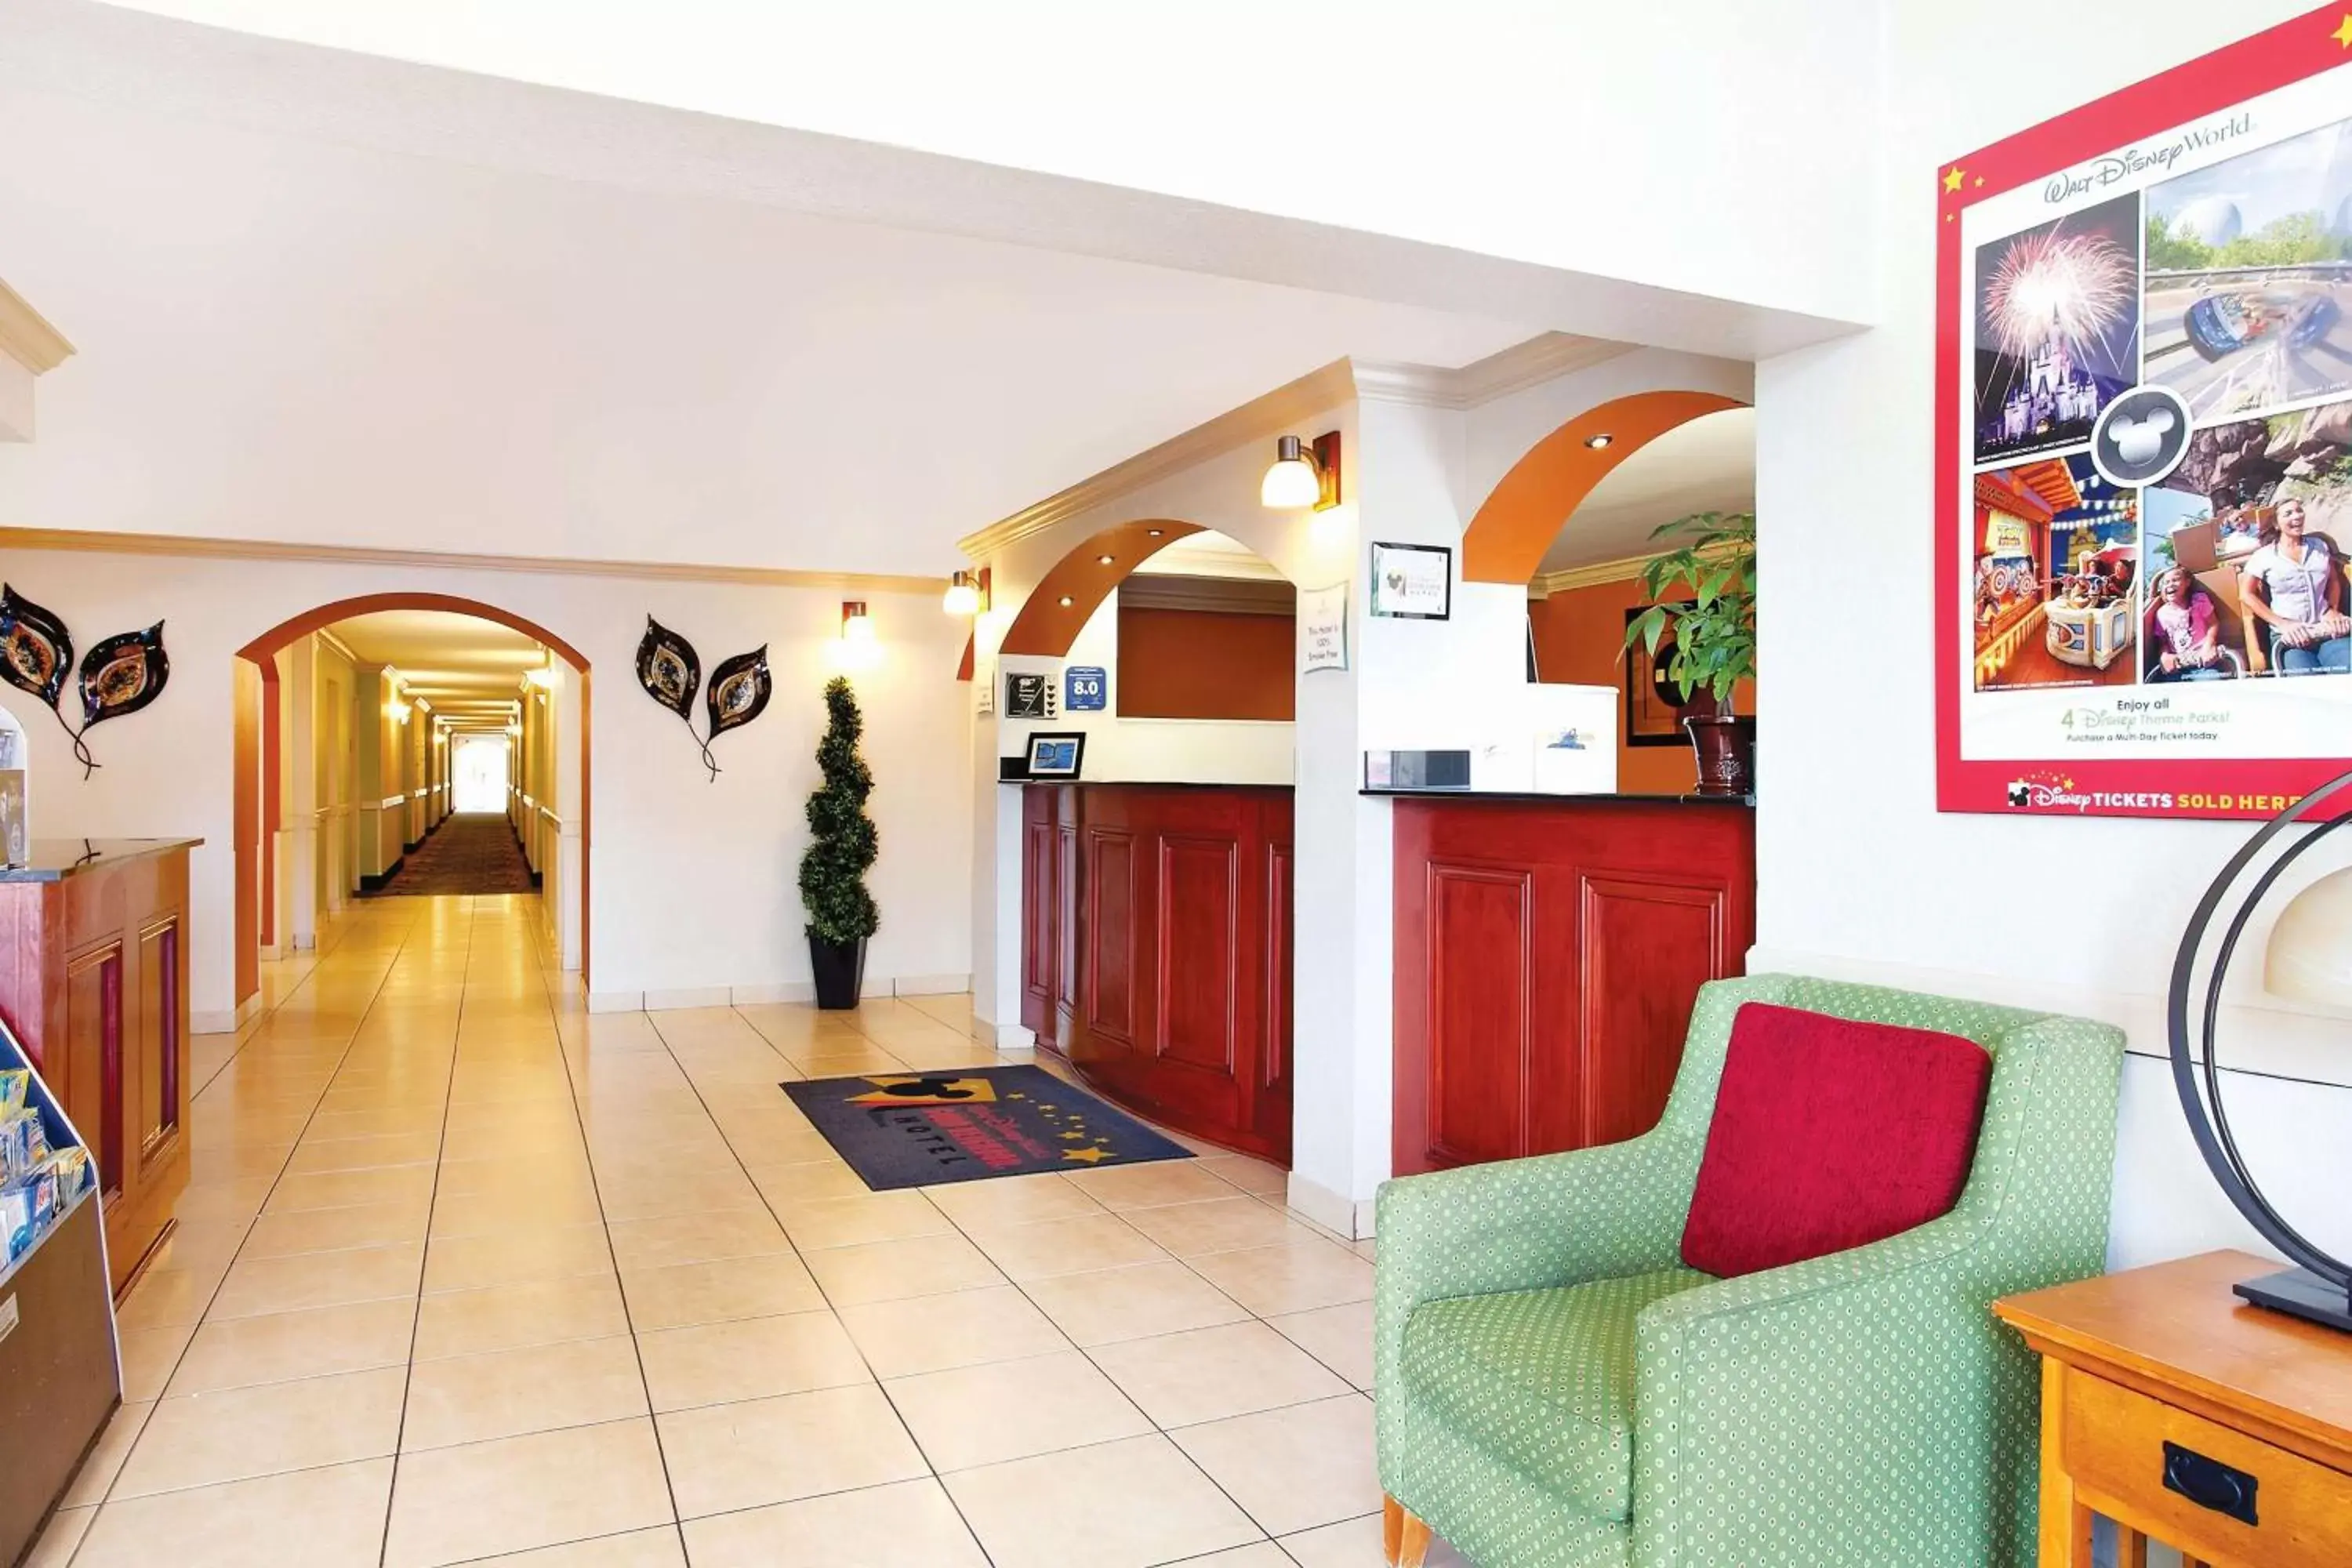 Lobby or reception, Lobby/Reception in La Quinta Inn by Wyndham Orlando International Drive North